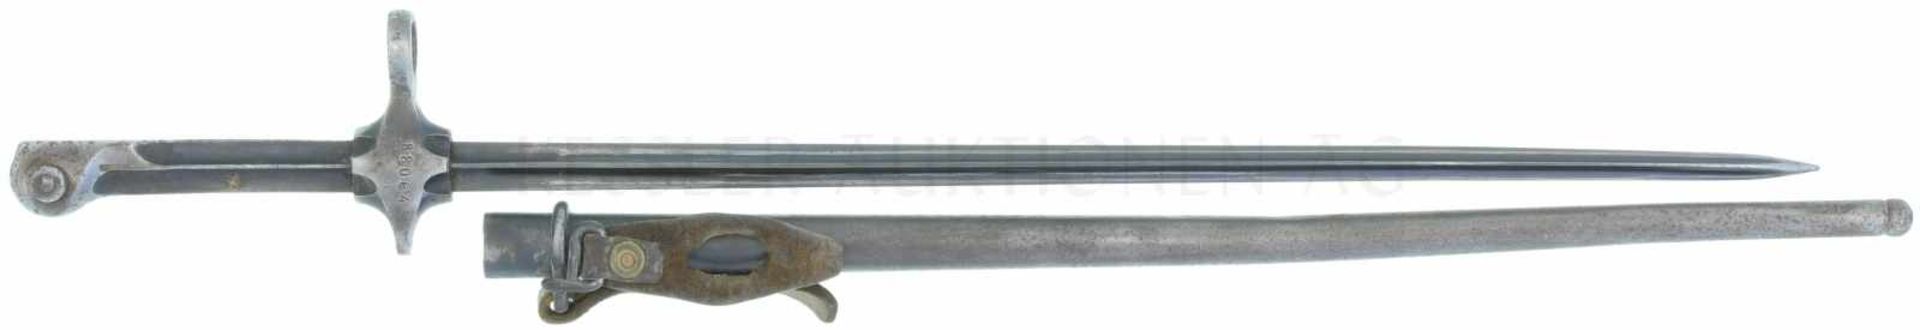 Stichbajonett, eidg. Ord. 1892/ 1900 zu K11 TL 503mm, Vierkantklinge, Parierstange mit Bohrung 14mm.